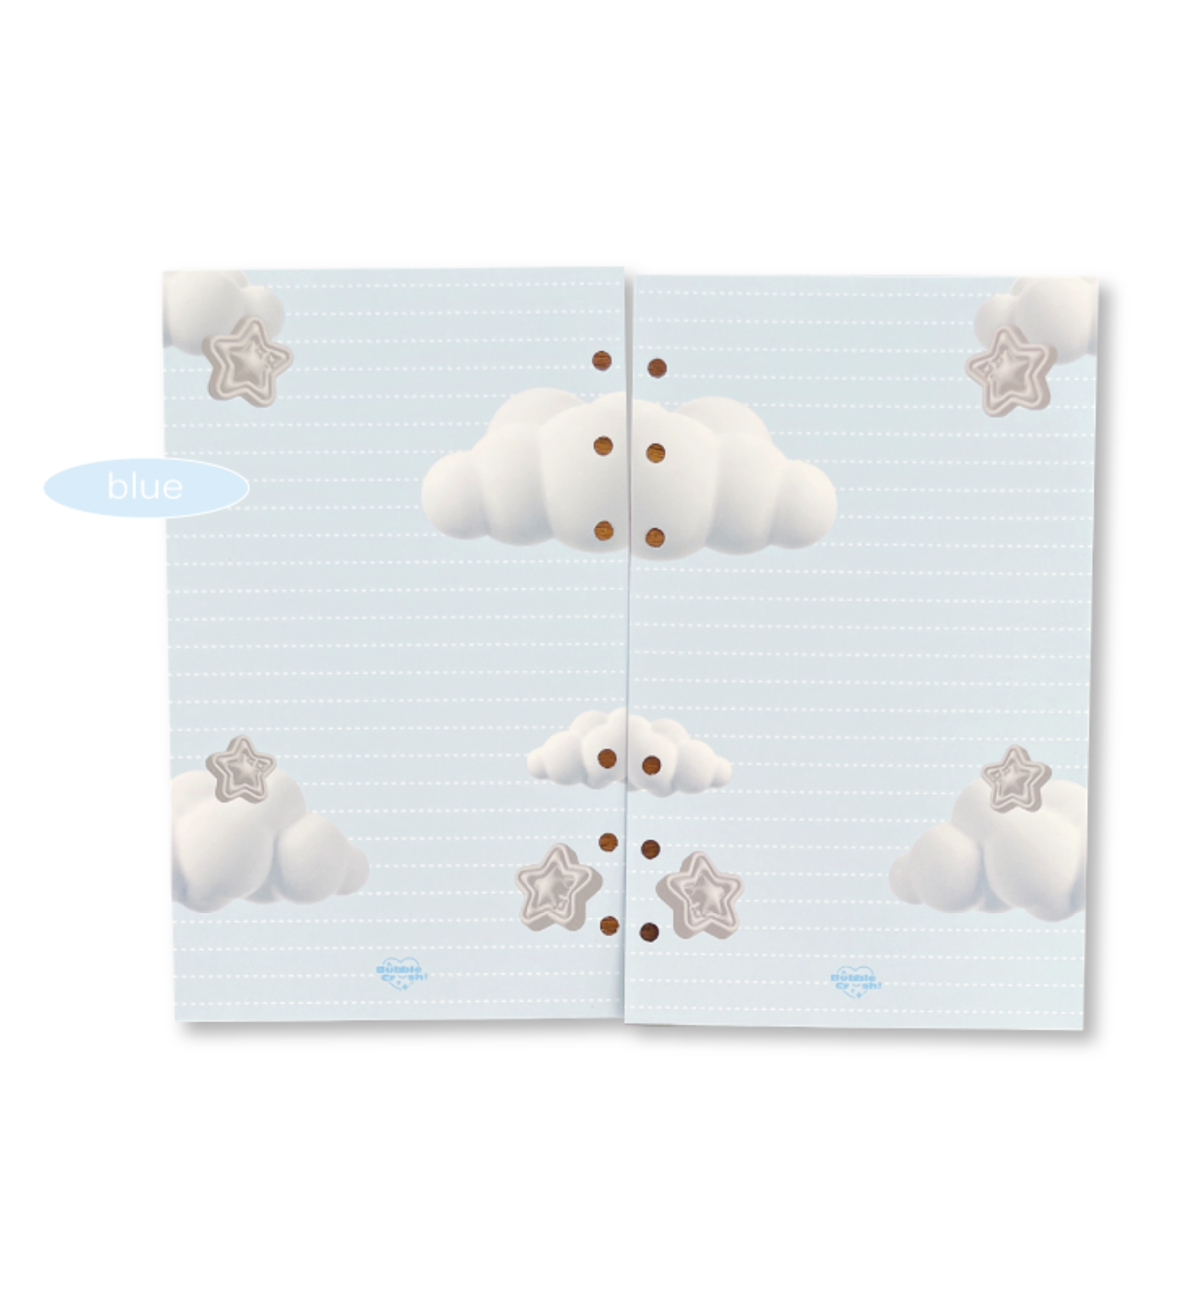 A6 3D Cloud Paper Refill